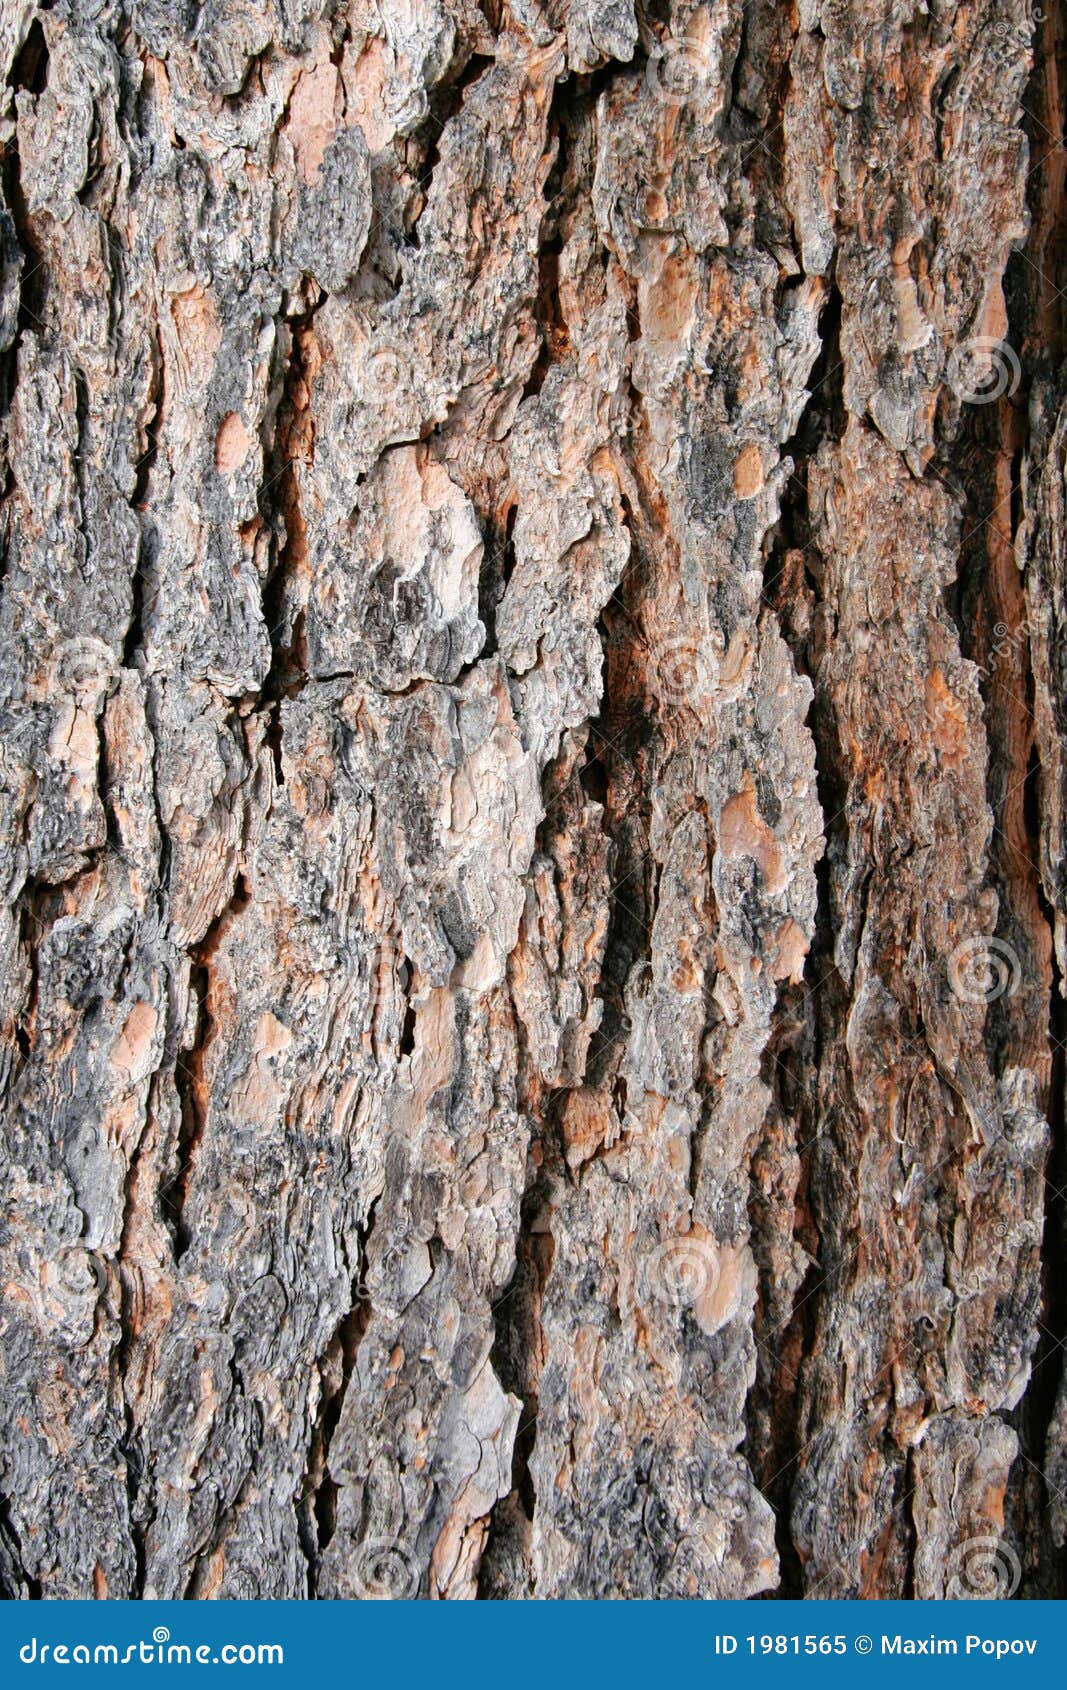 clipart tree bark - photo #24